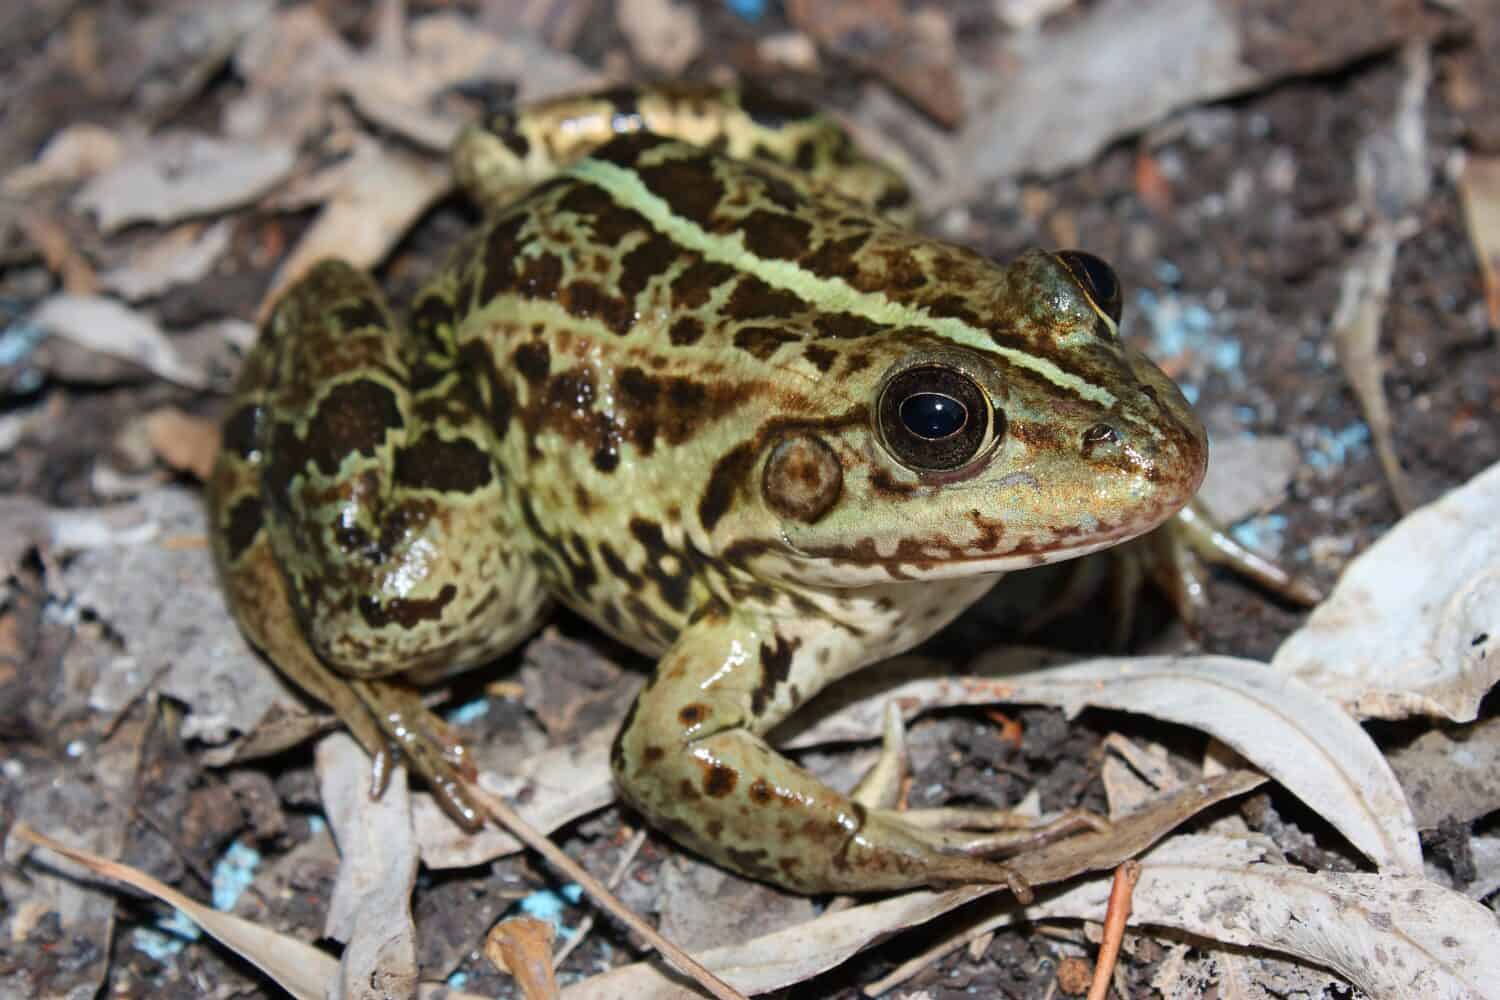 The Balkan frog,  Balkan water frog, or Greek marsh frog (Pelophylax kurtmuelleri) in a natural habitat